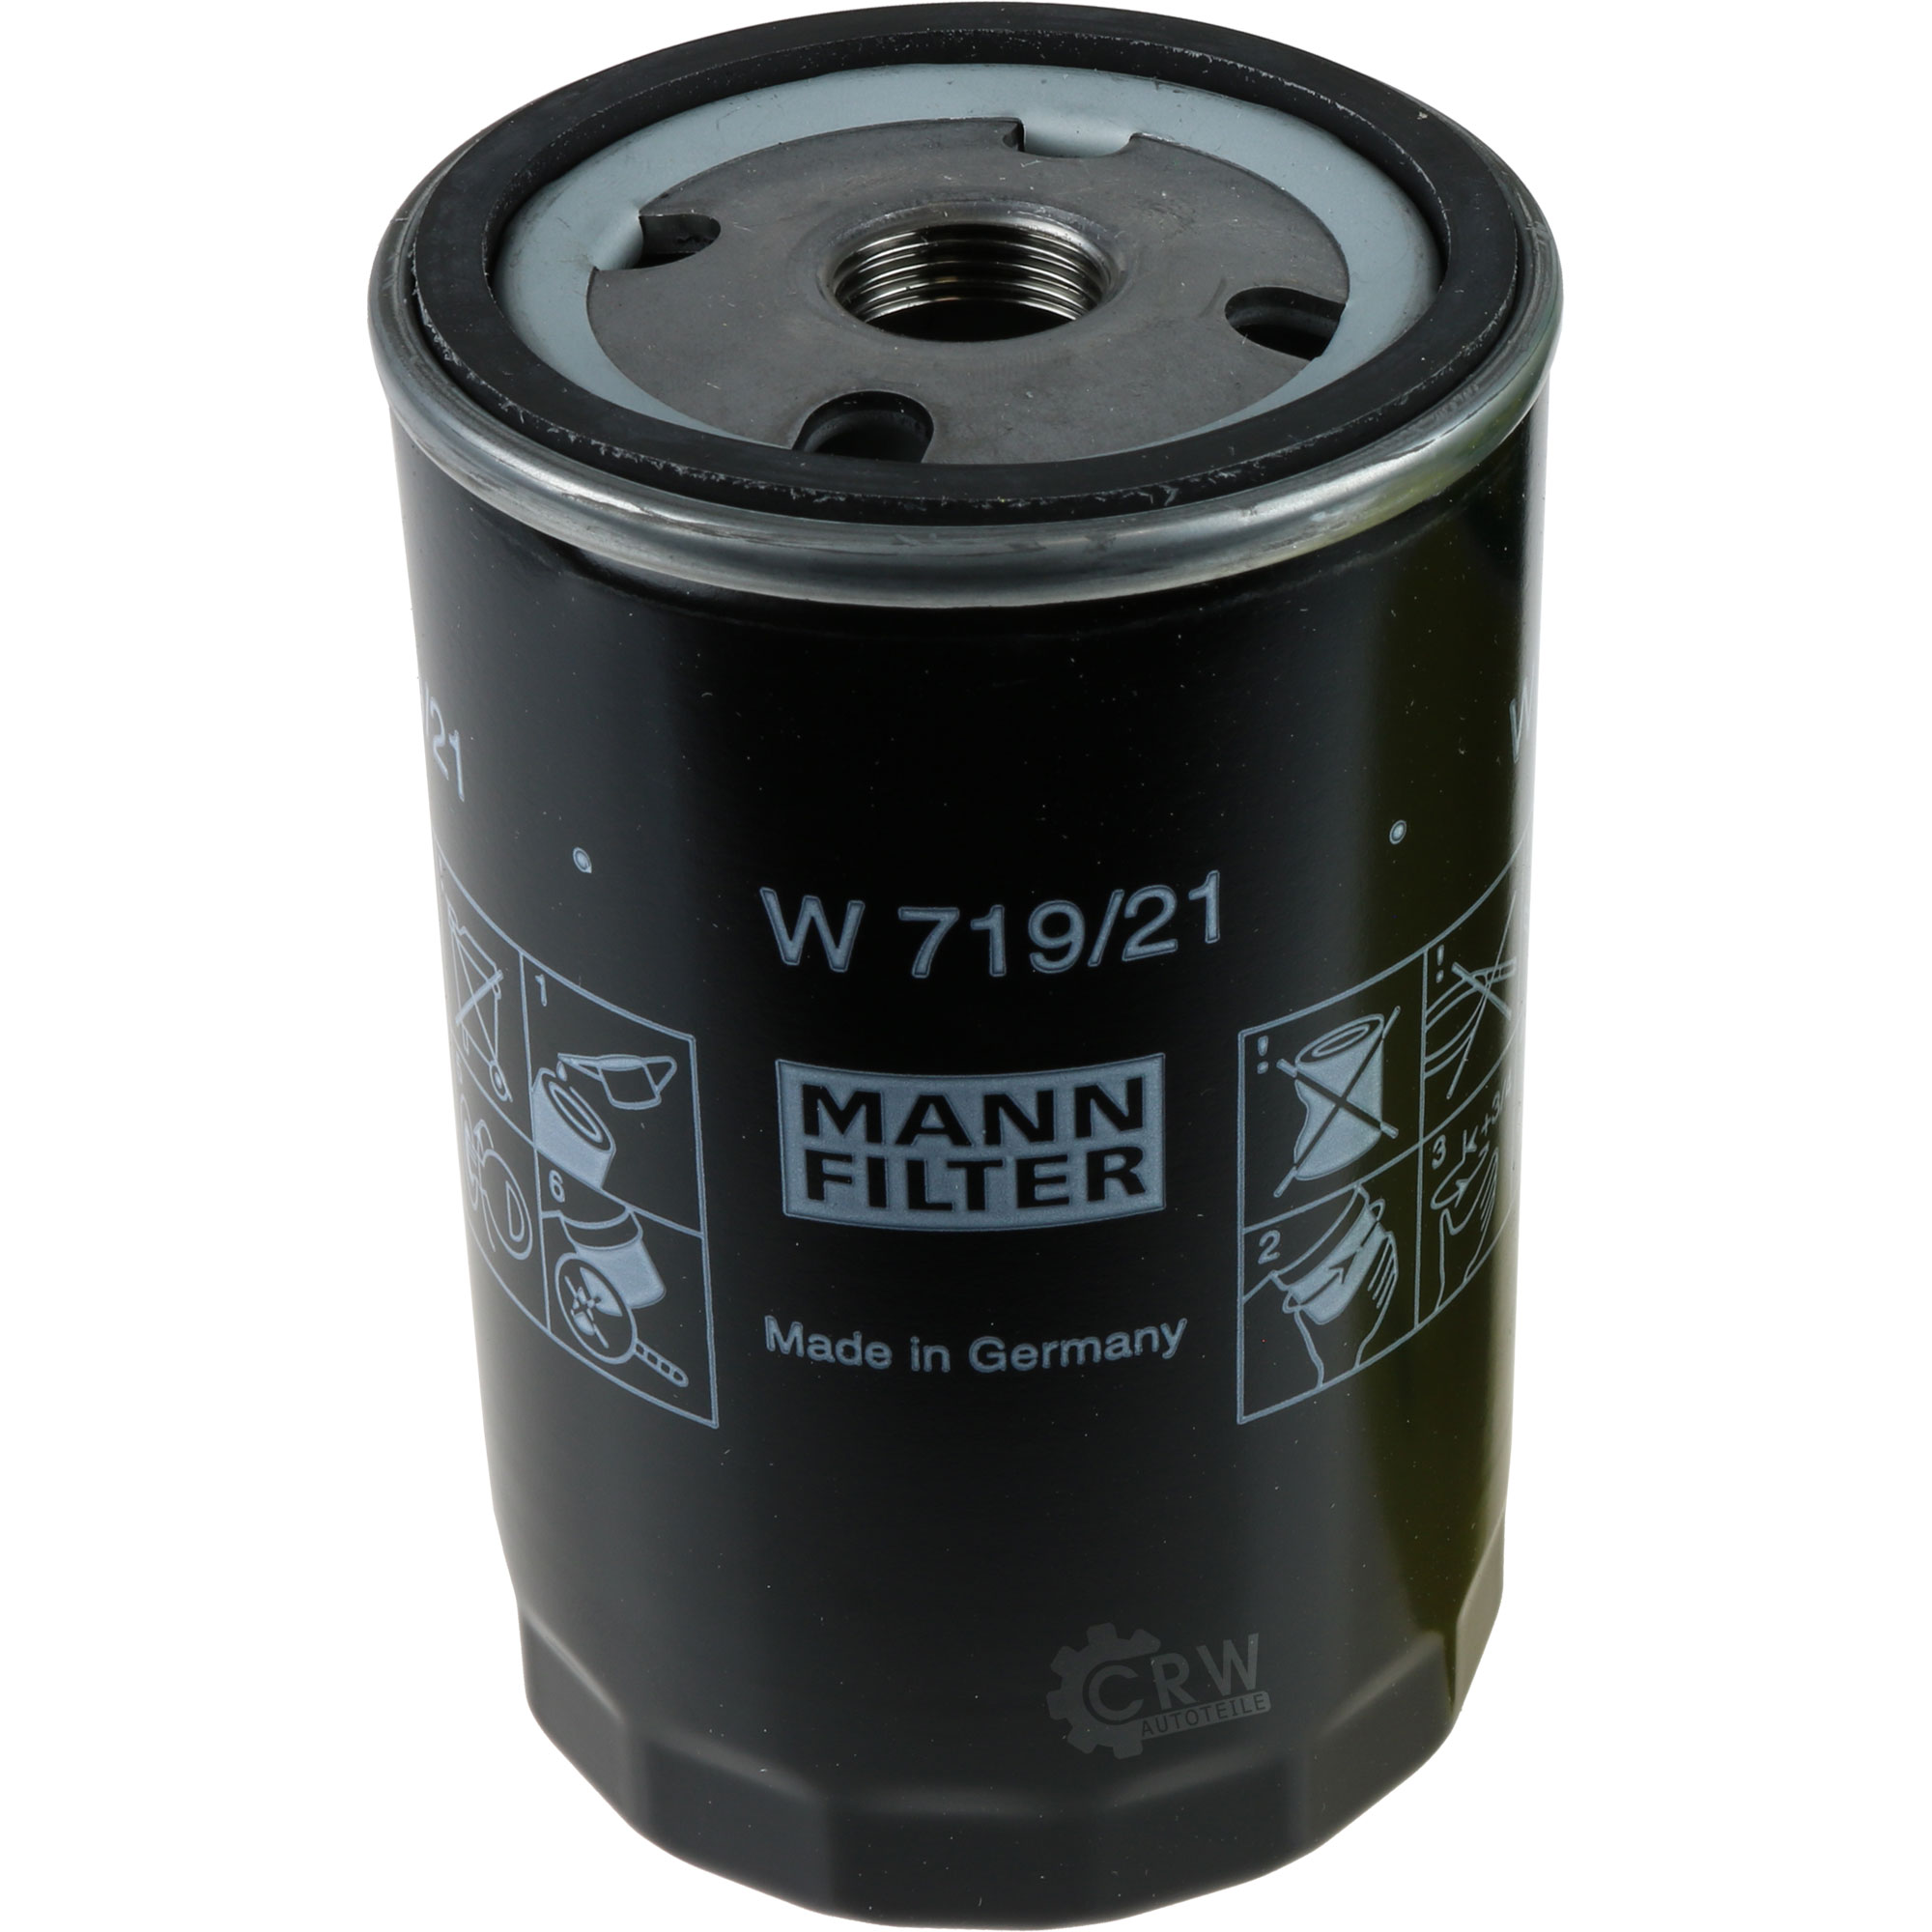 MANN-FILTER Ölfilter W 719/21 Oil Filter